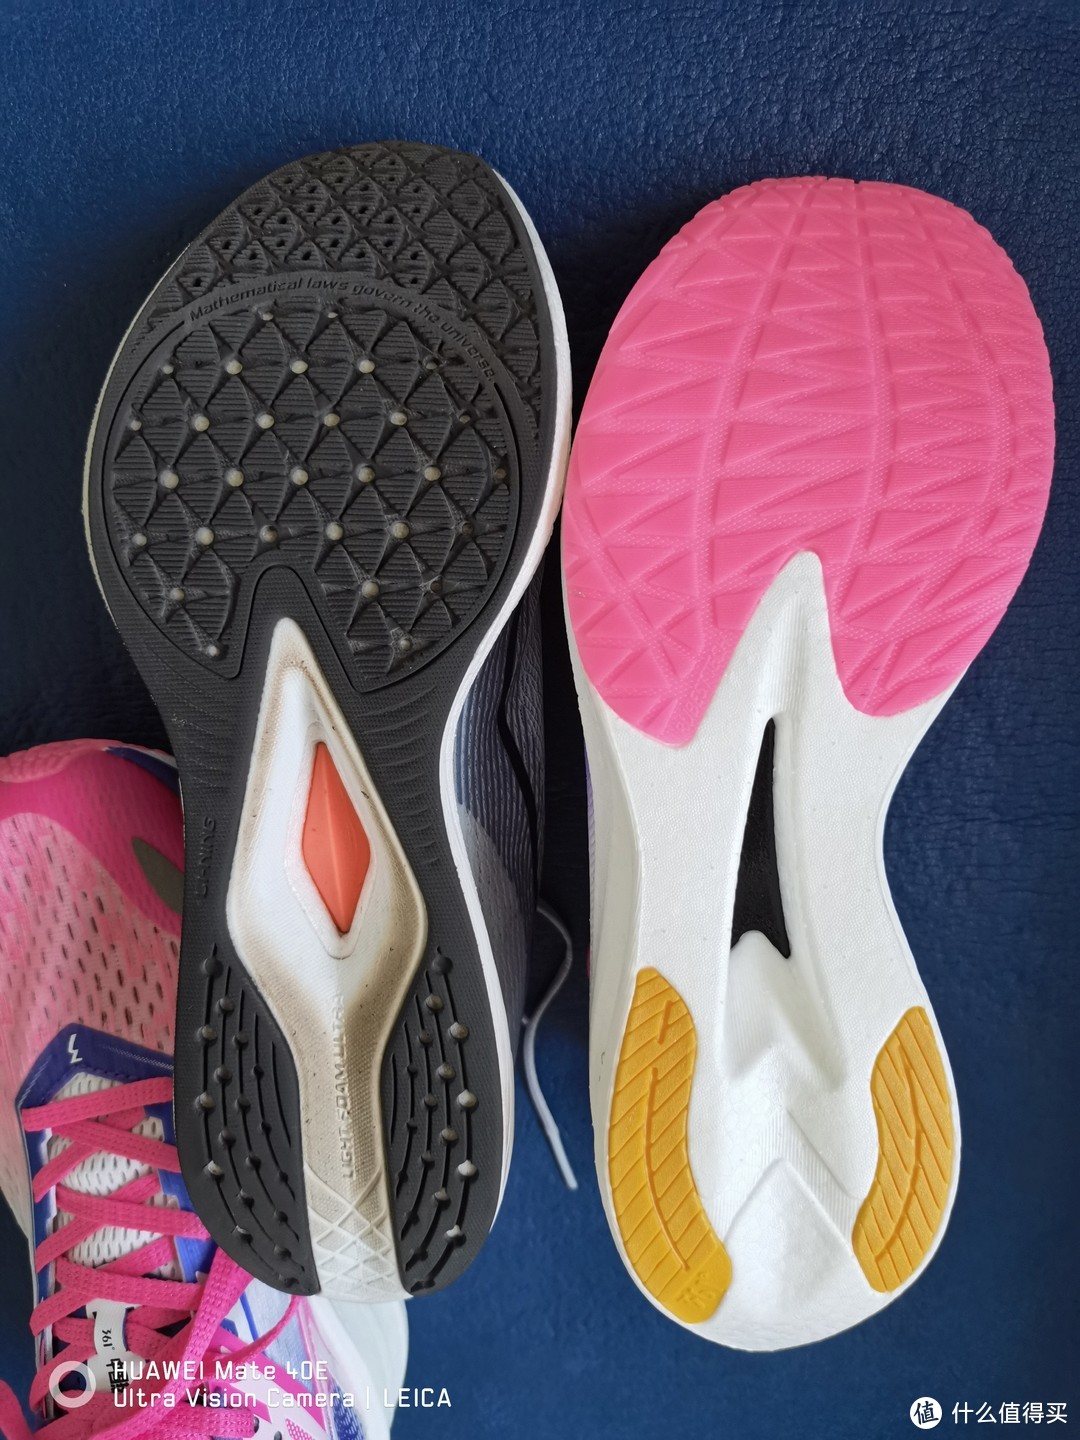 鞋底差异明显，但中间都有塑料科技板